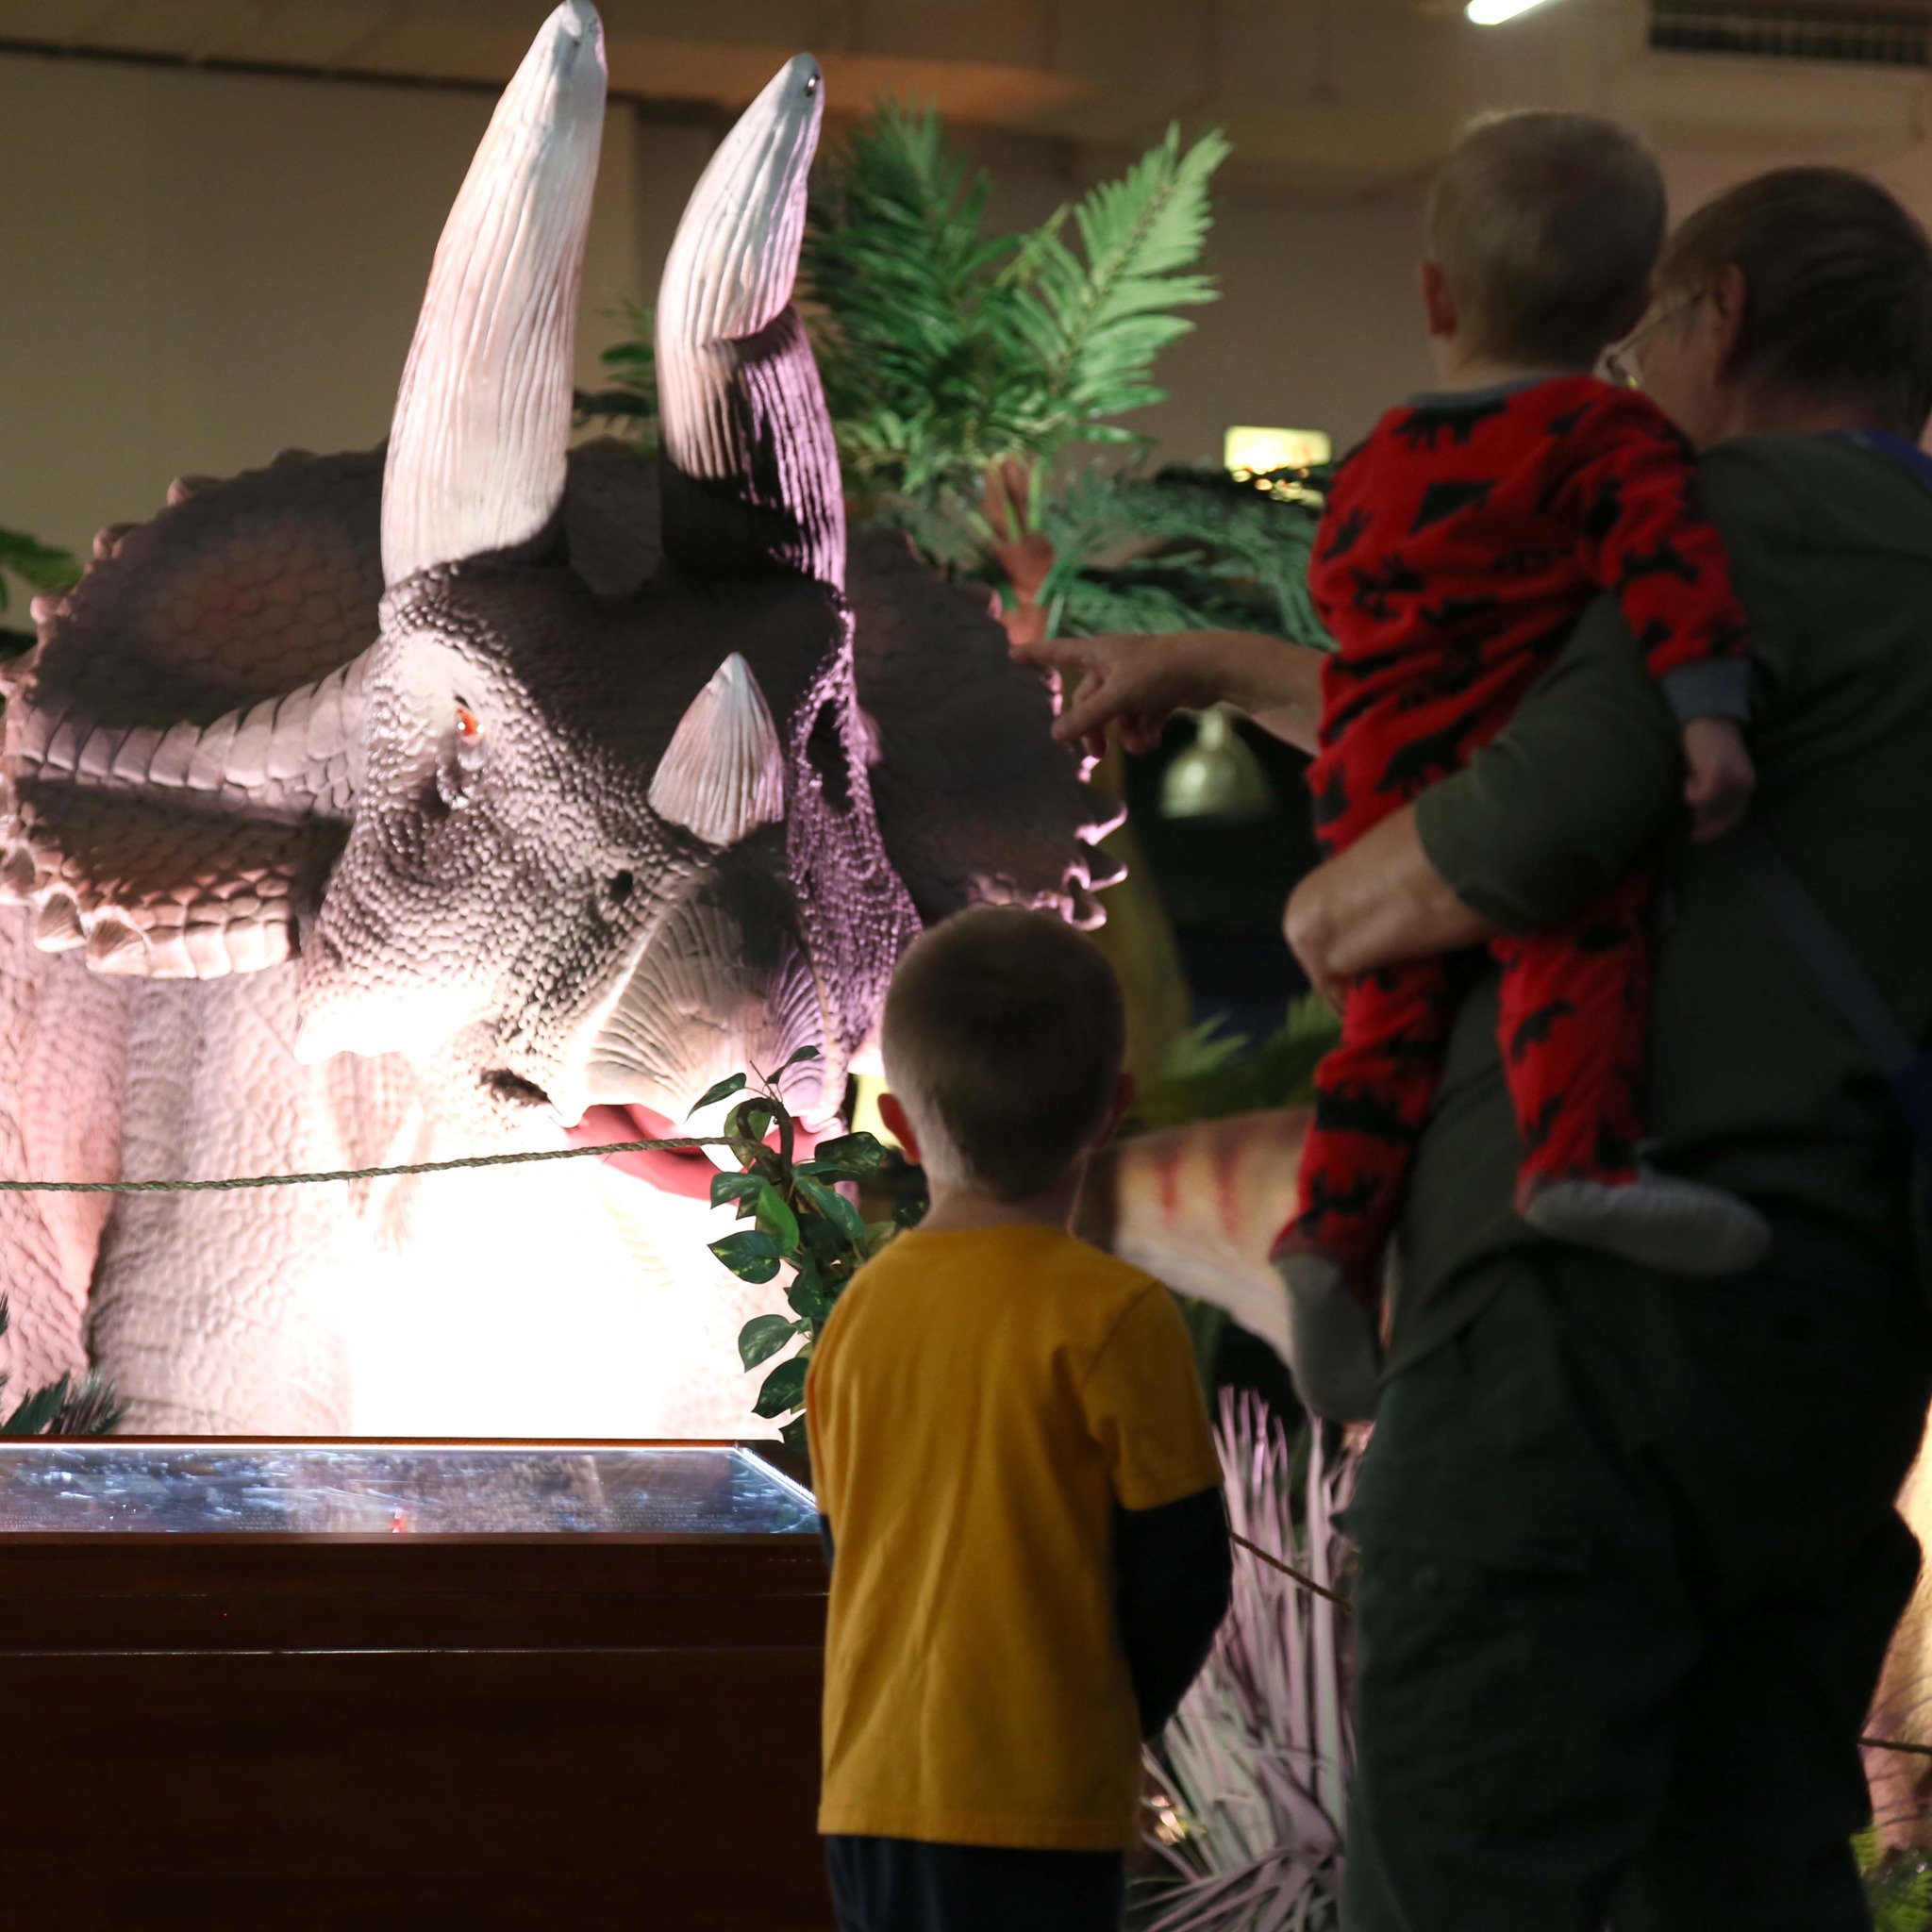 children looking at dinosaur exhibit